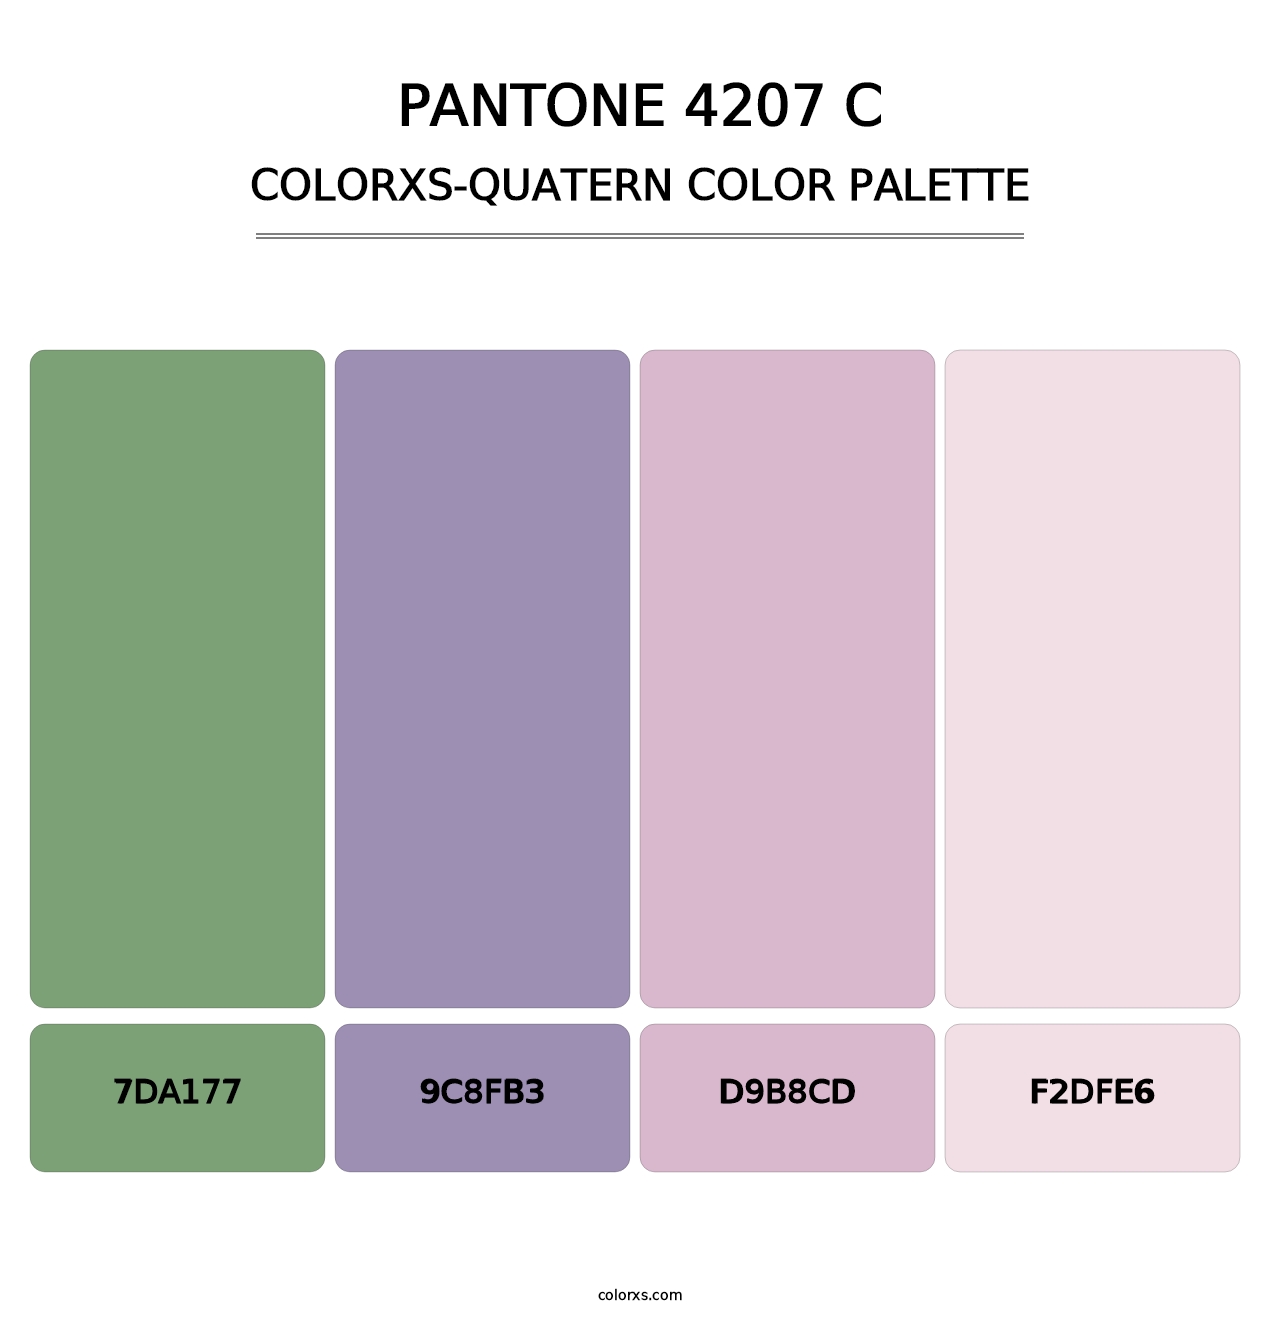 PANTONE 4207 C - Colorxs Quatern Palette